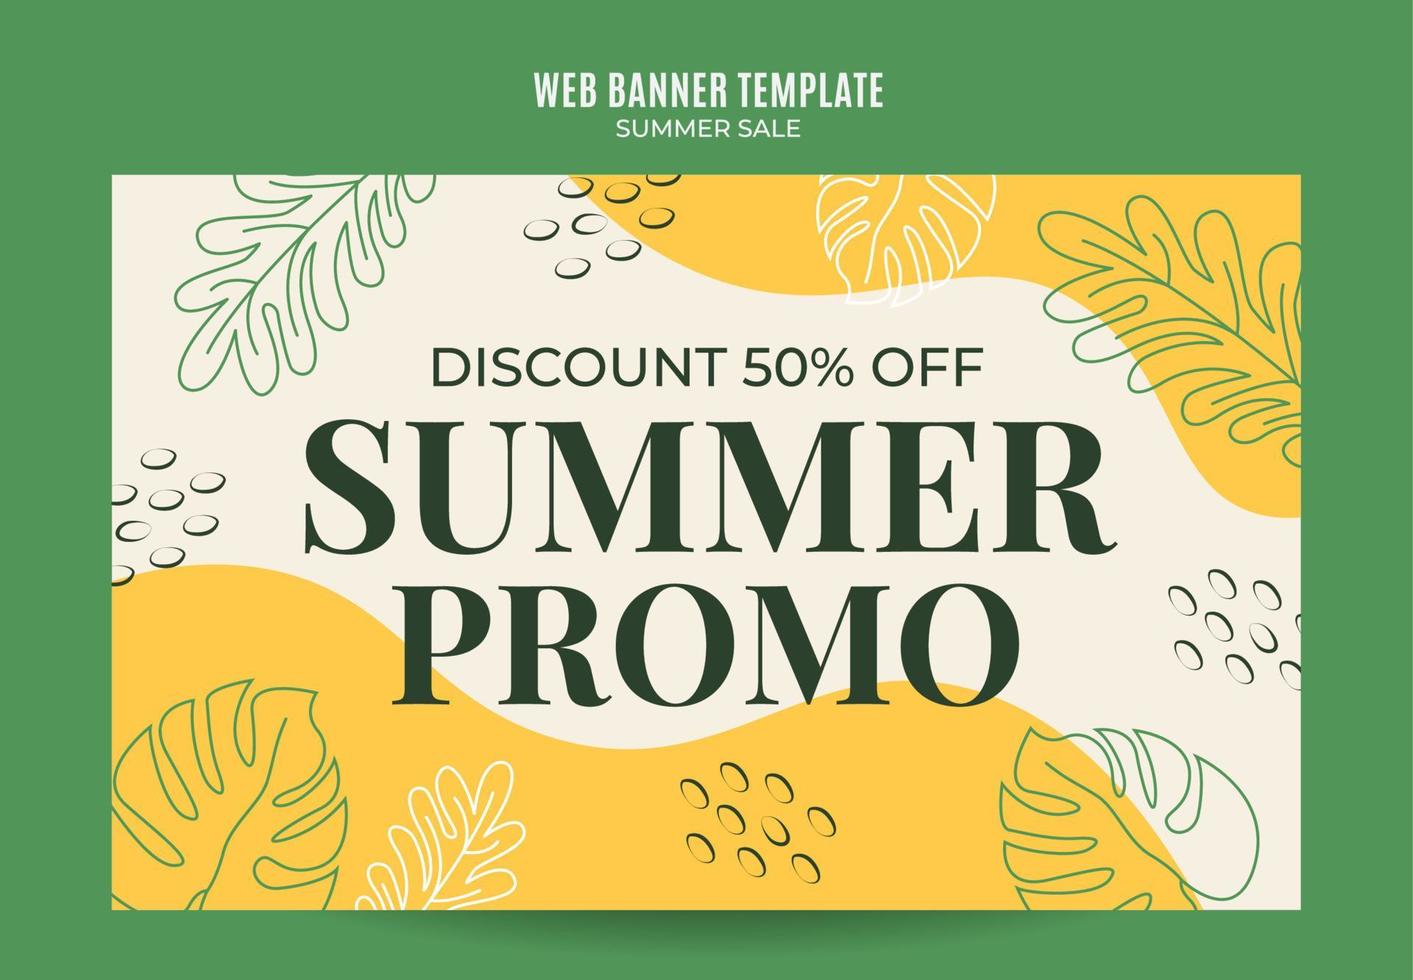 Happy Summer Sale Web Banner für Social Media Poster, Banner, Space Area und Hintergrund vektor